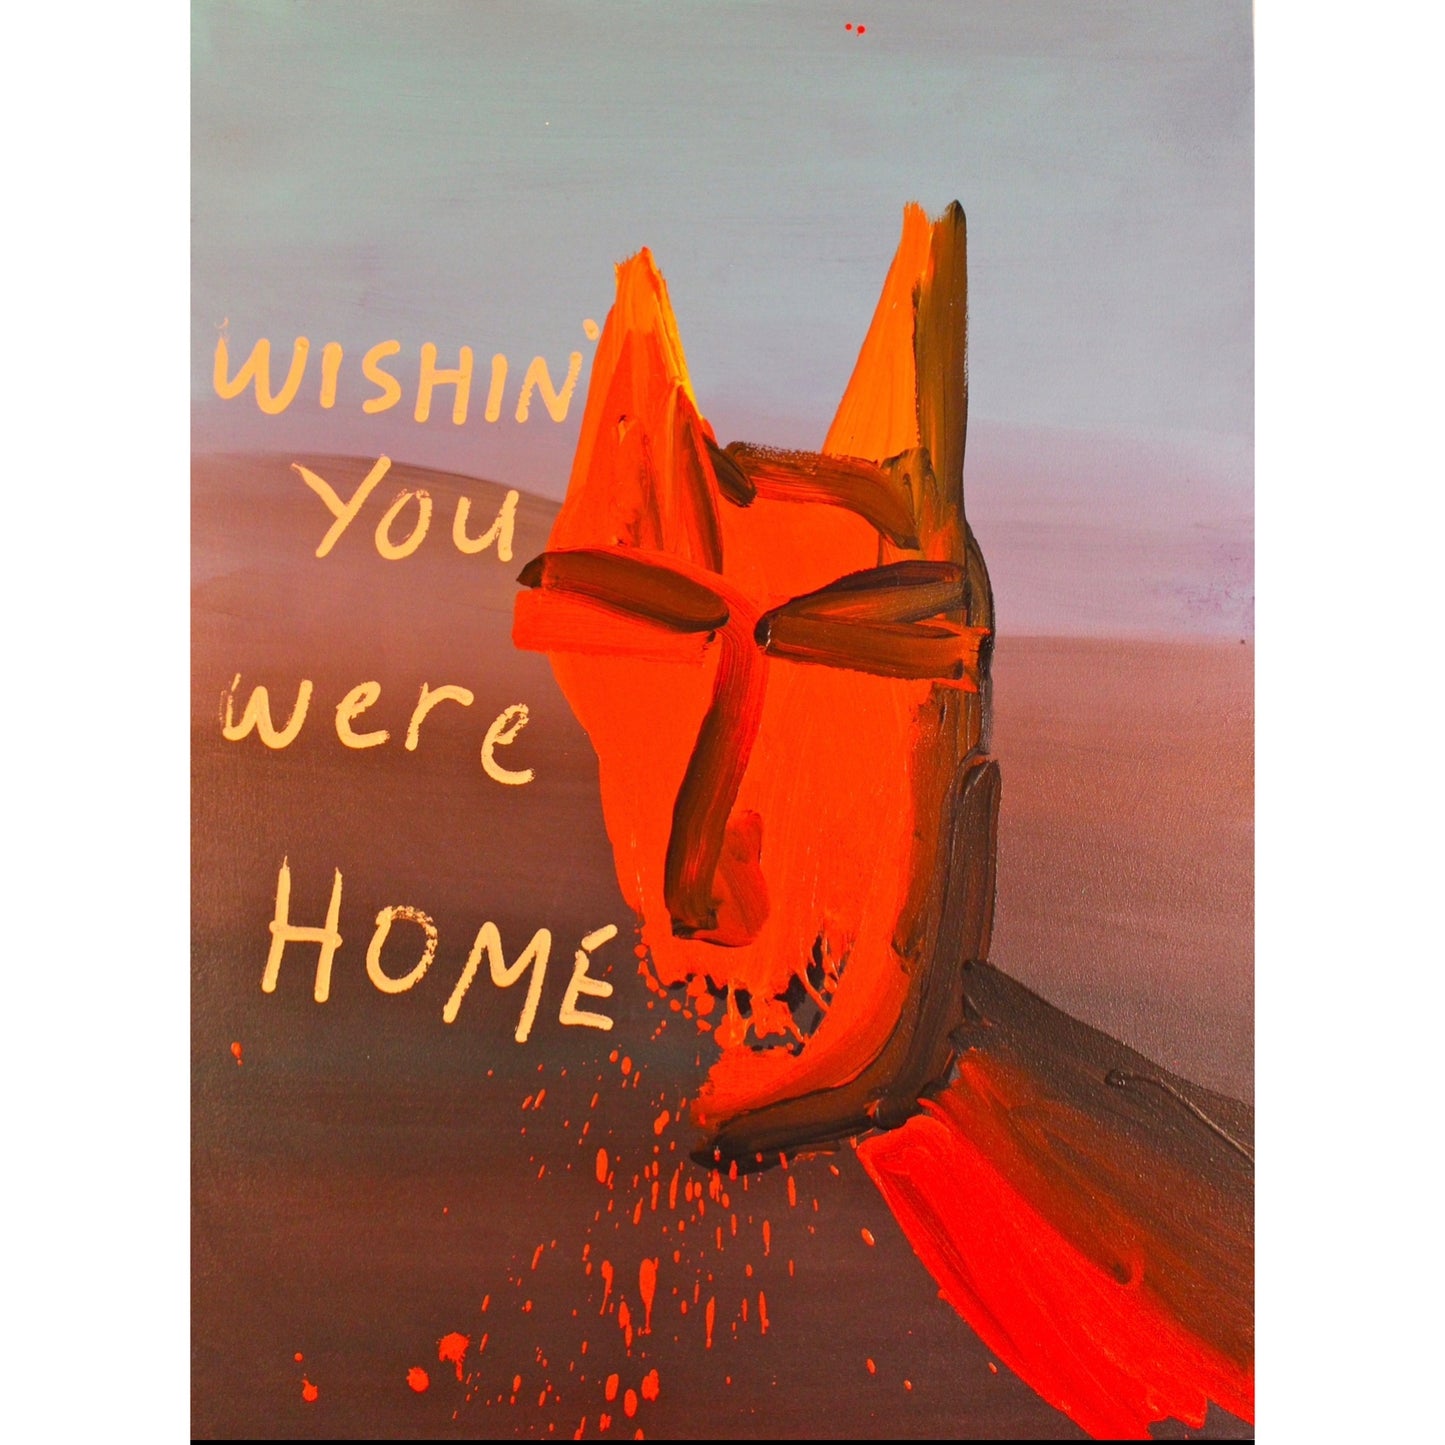 Wishing you were home